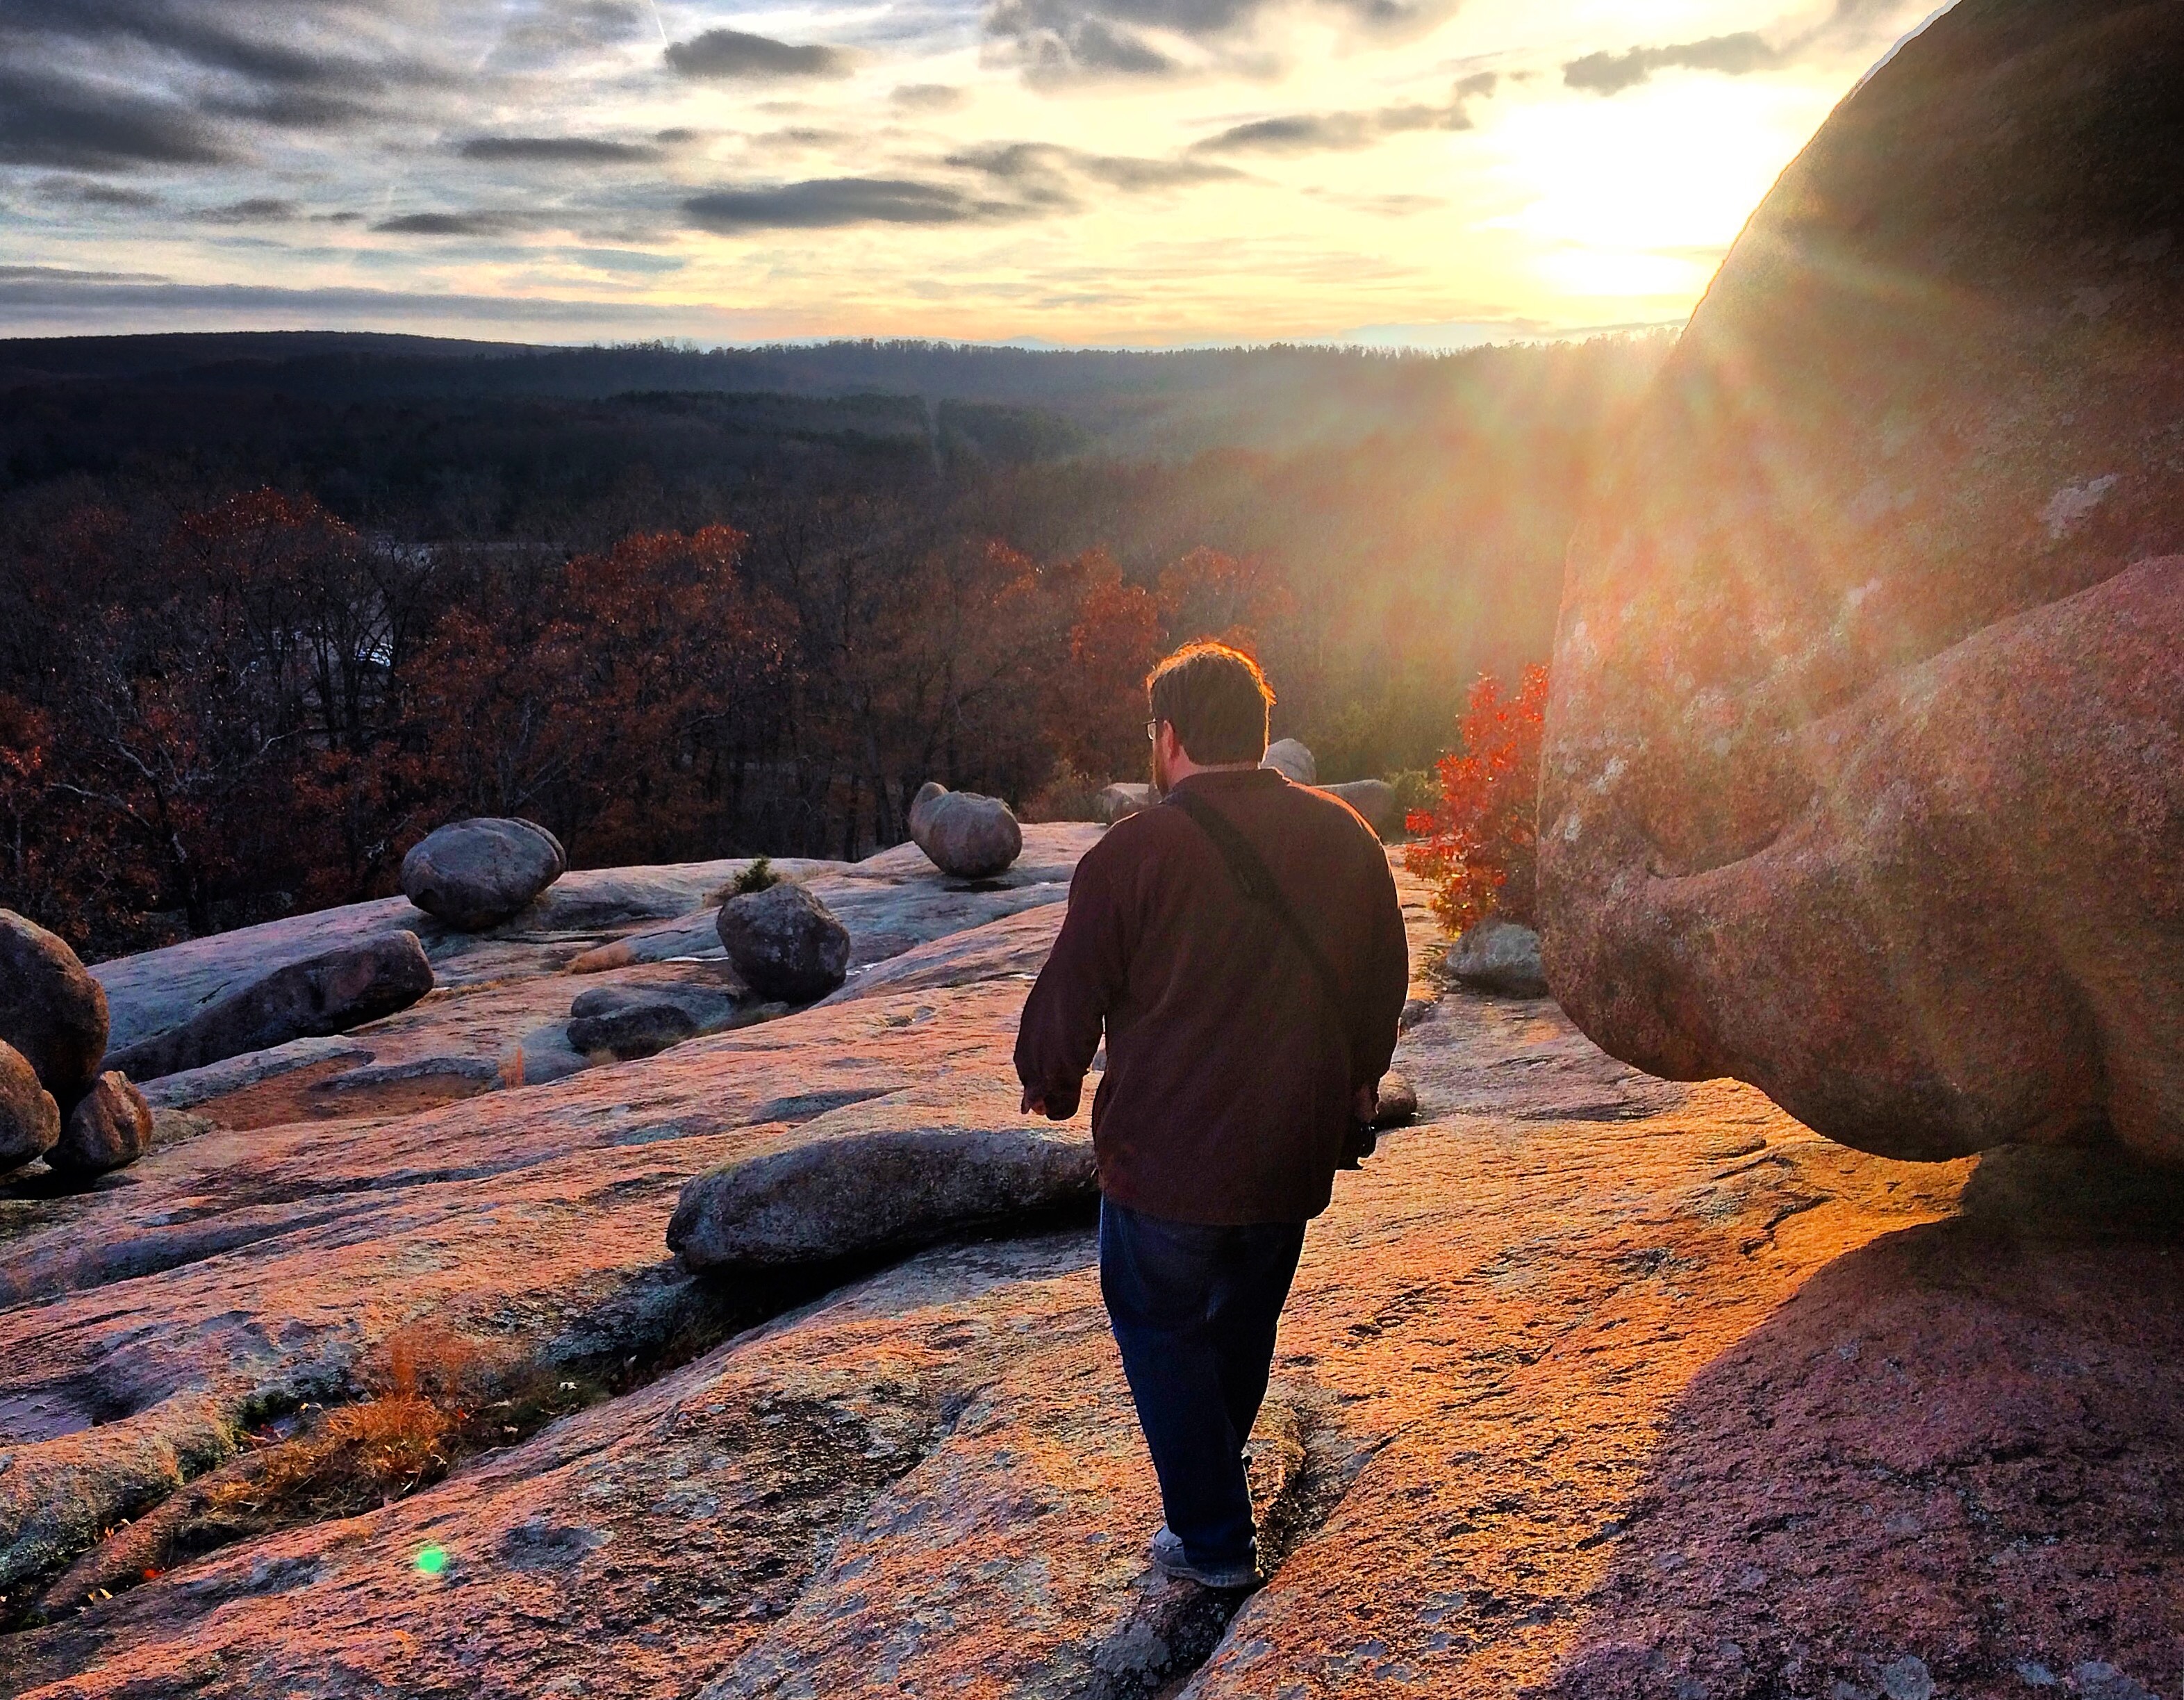 Man walking on rocks at sunset.